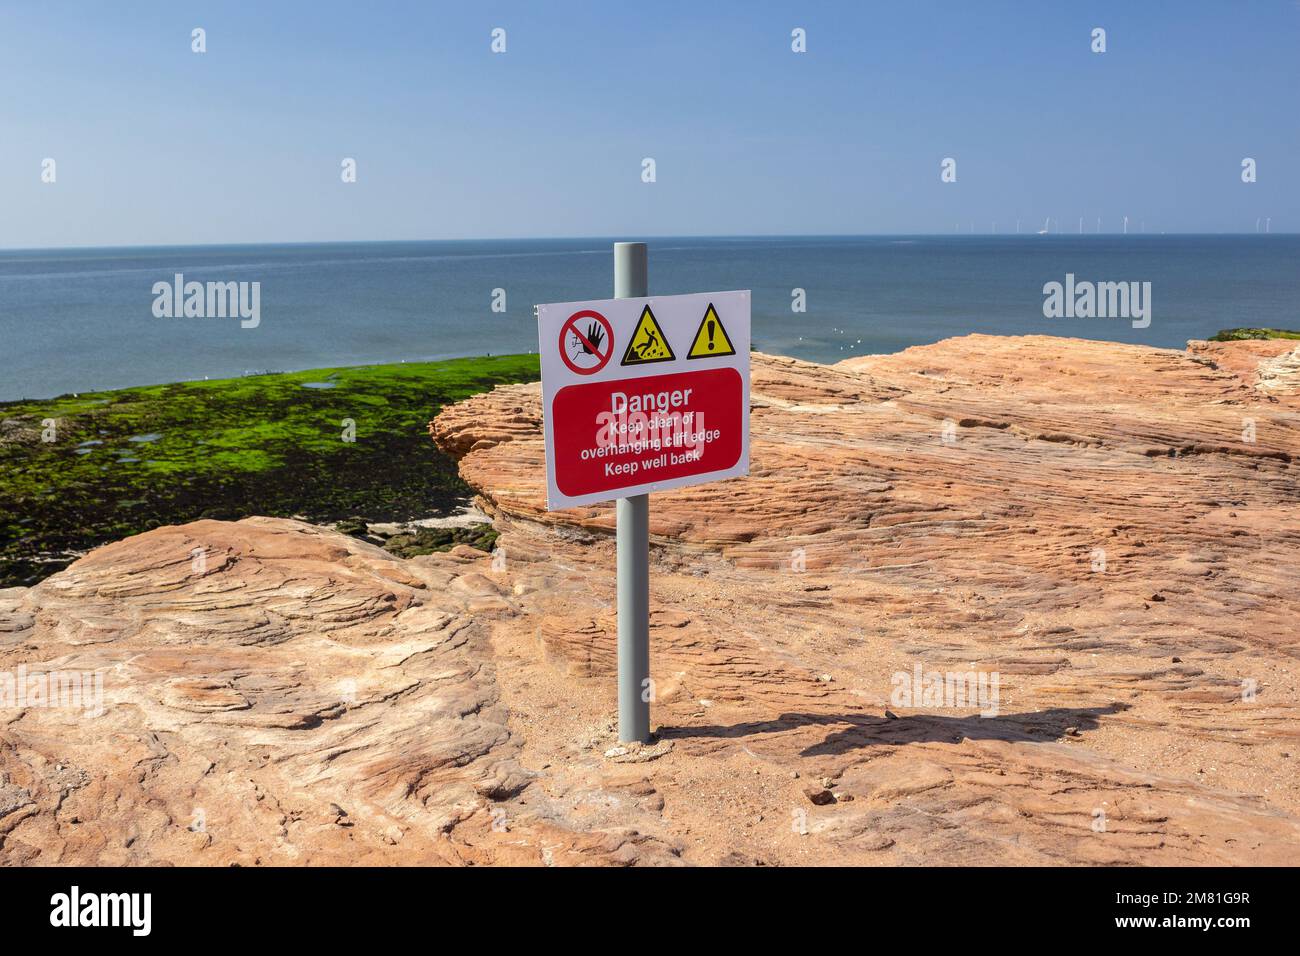 Isola di Hilbre, Regno Unito: Segnale di avvertimento sulla sporgenza rocciosa con l'estuario del Dee qui sotto. Pericolo - tenersi a distanza dal bordo della scogliera, tenersi ben indietro Foto Stock